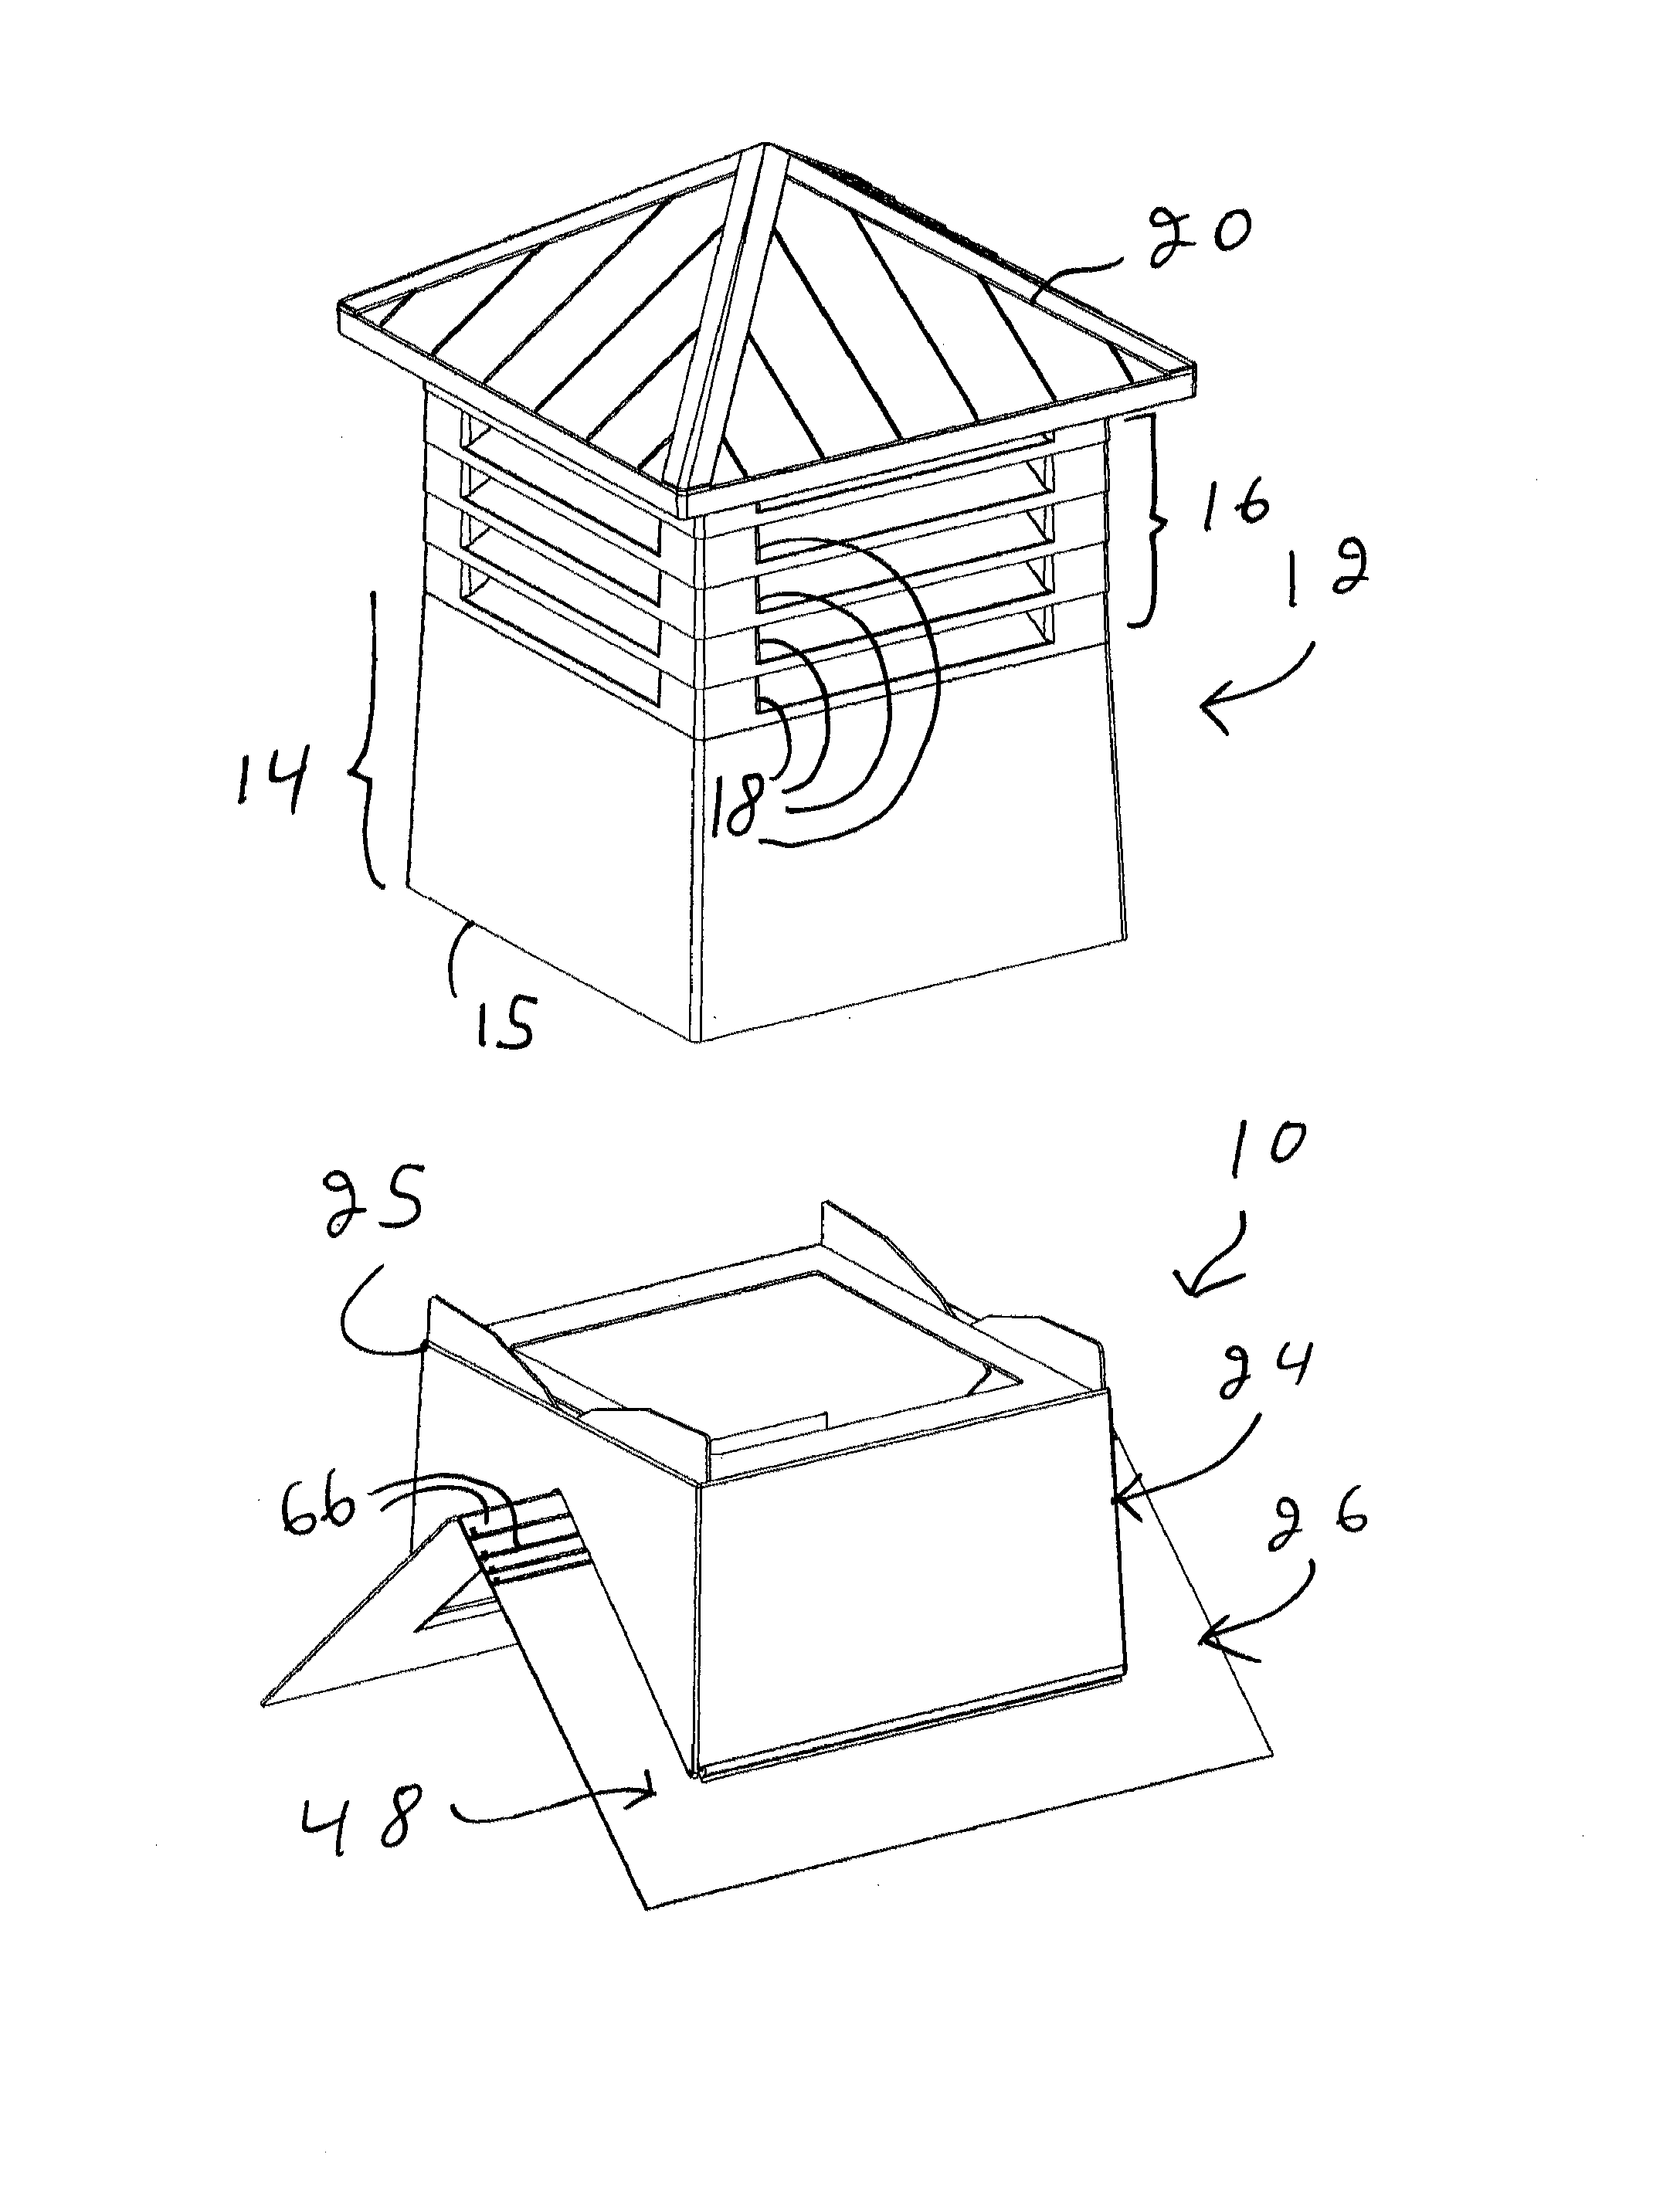 Adjustable roof ventilator base